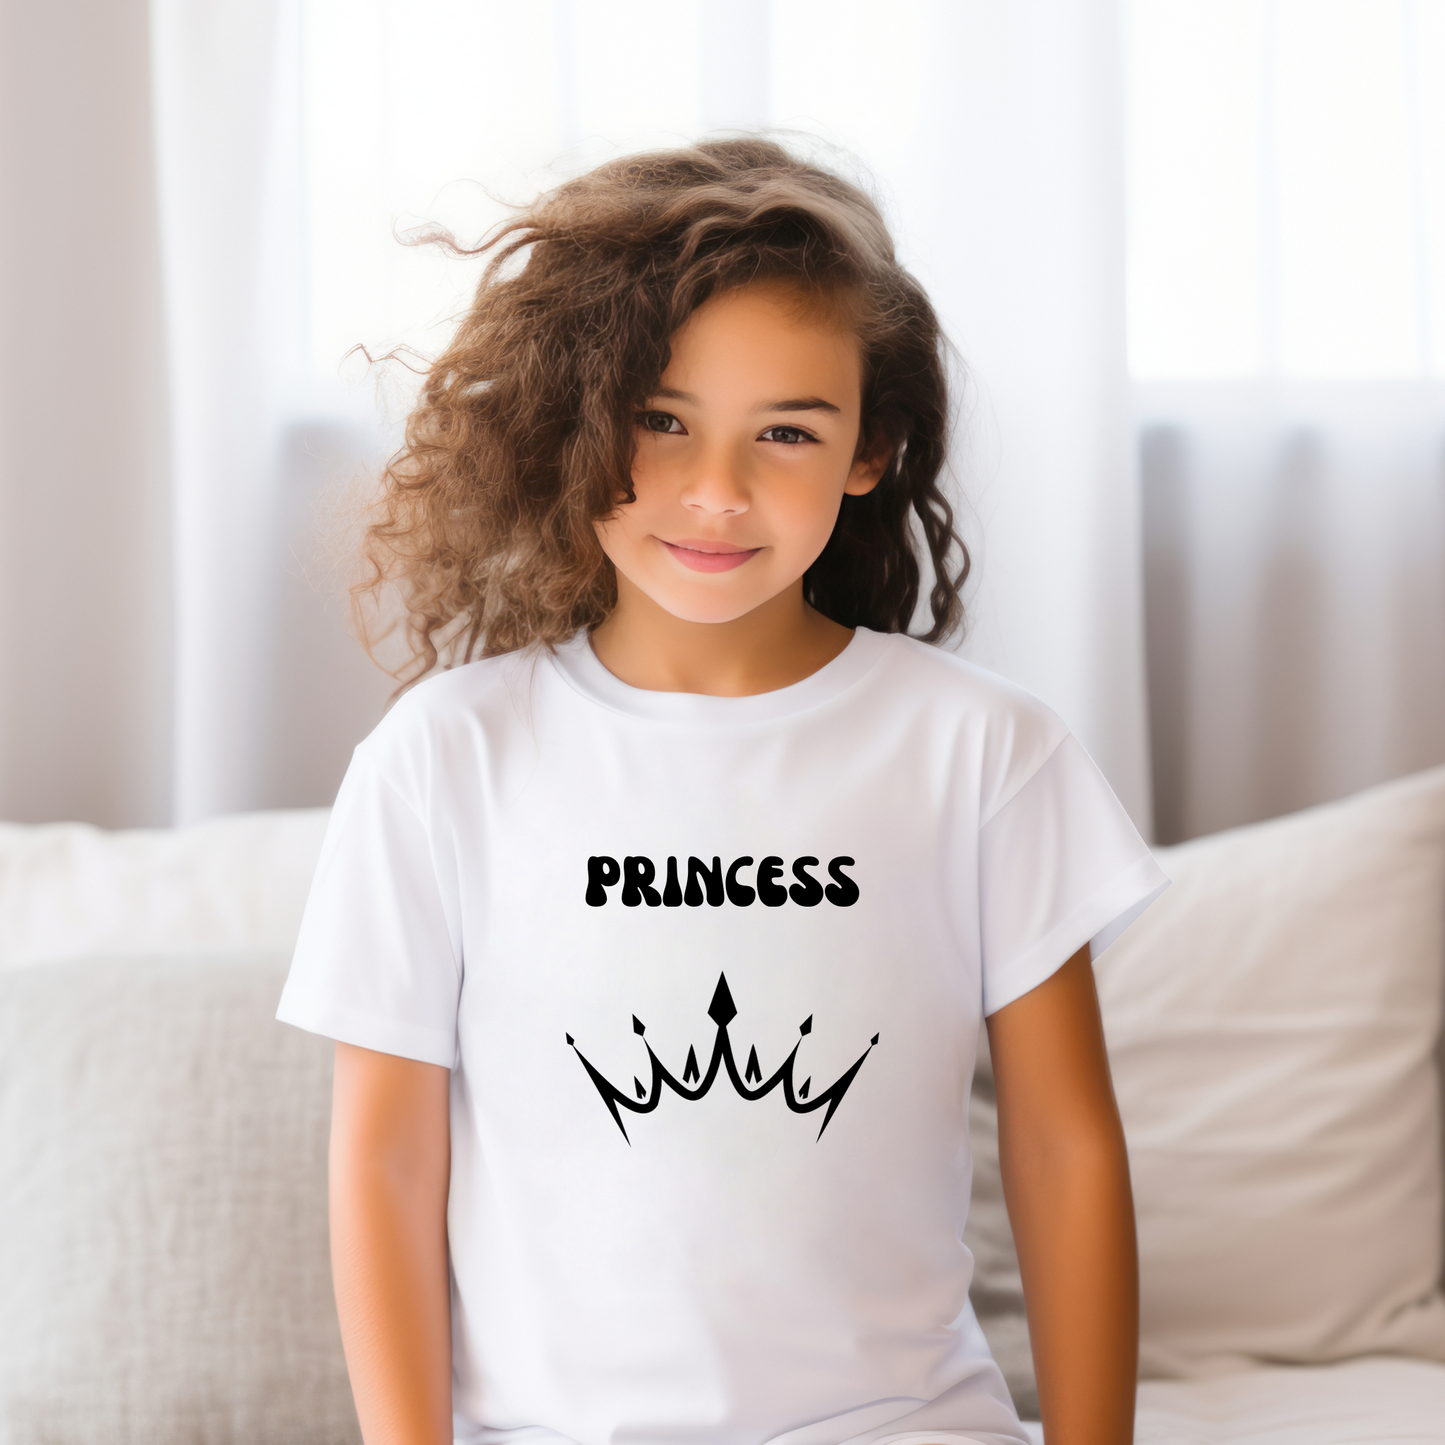 Princess - Youth Tee (6+ years)